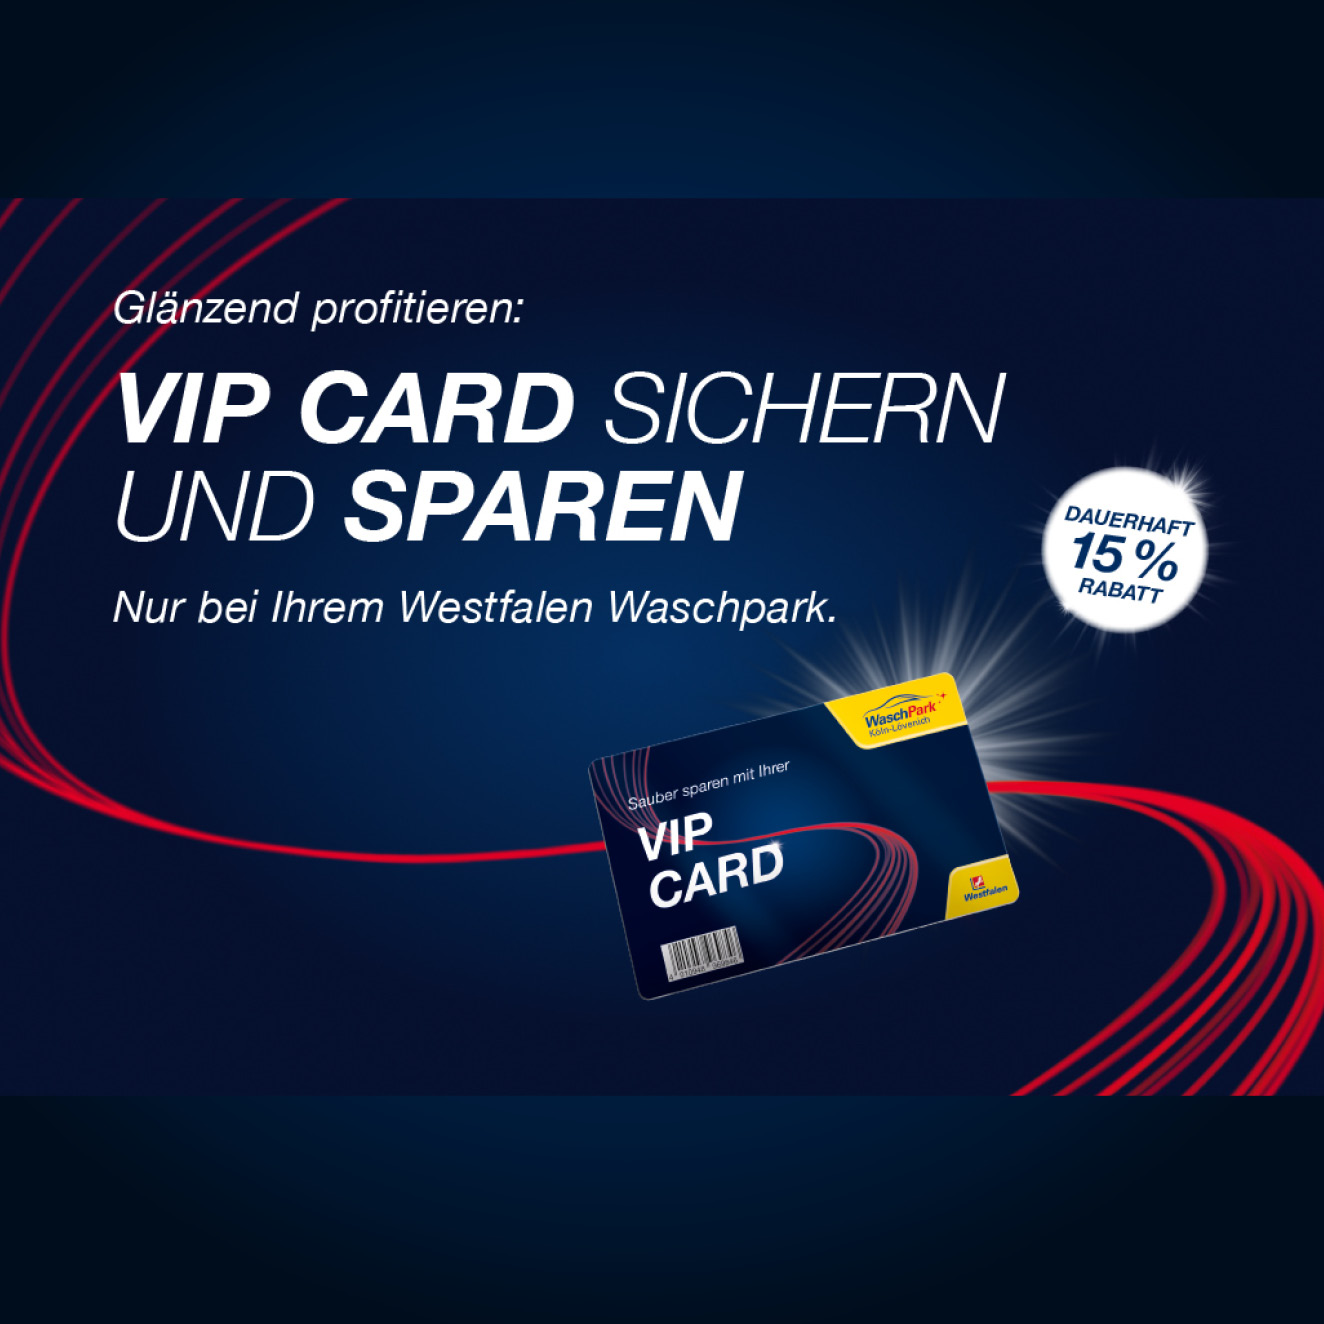 Westfalen Waschpark Vip Card Angebot